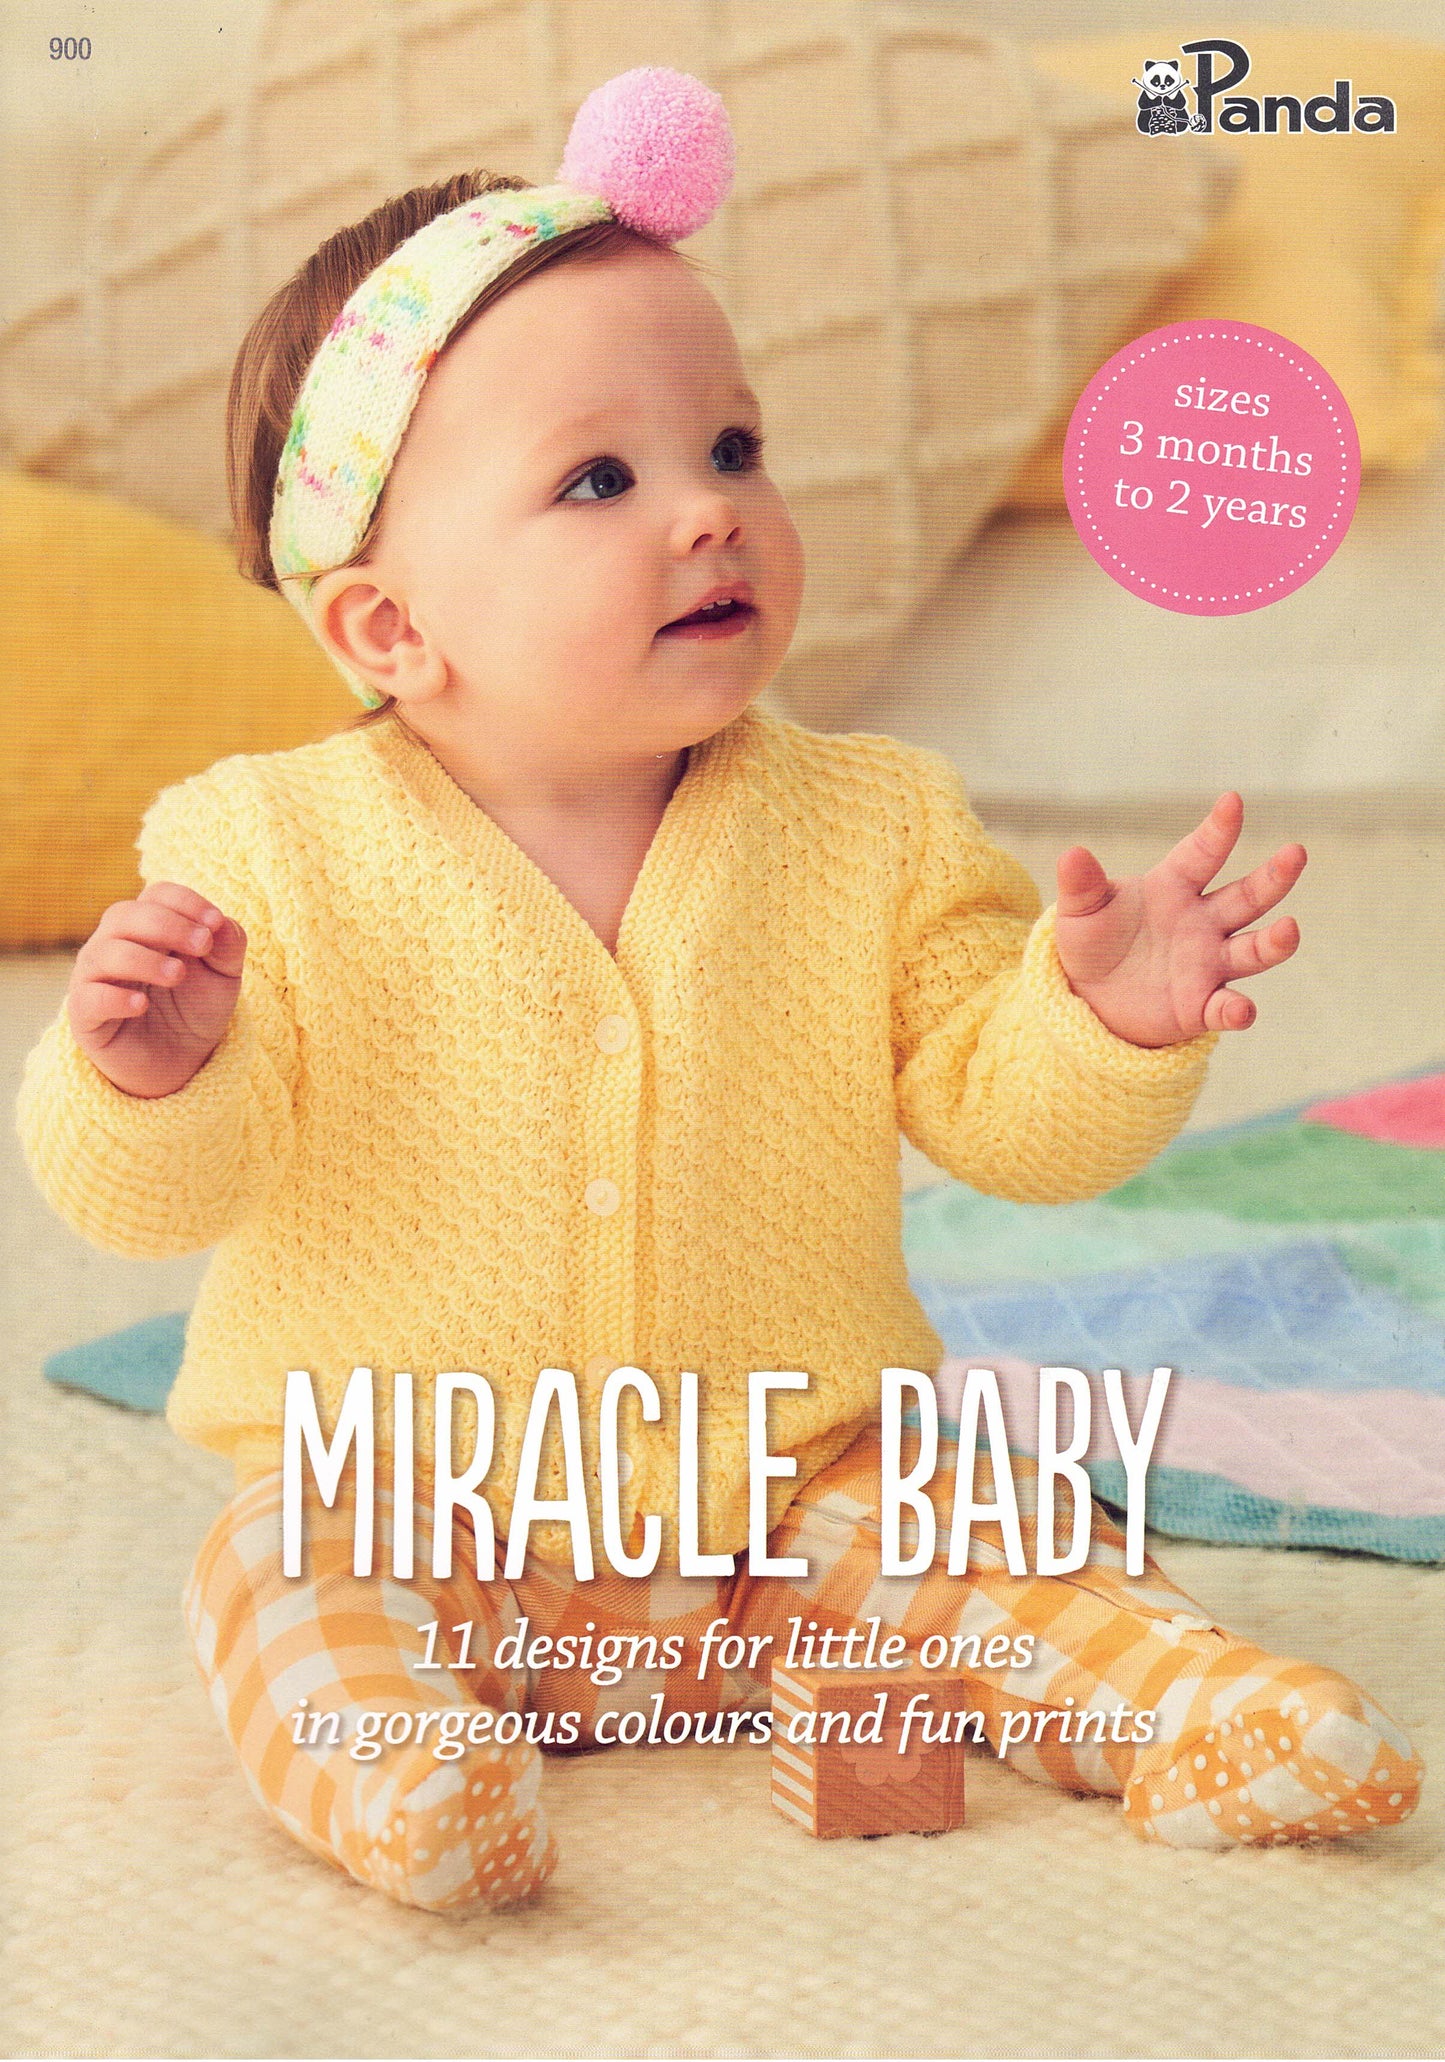 Baby/Toddler - Panda Miracle Baby Book 900